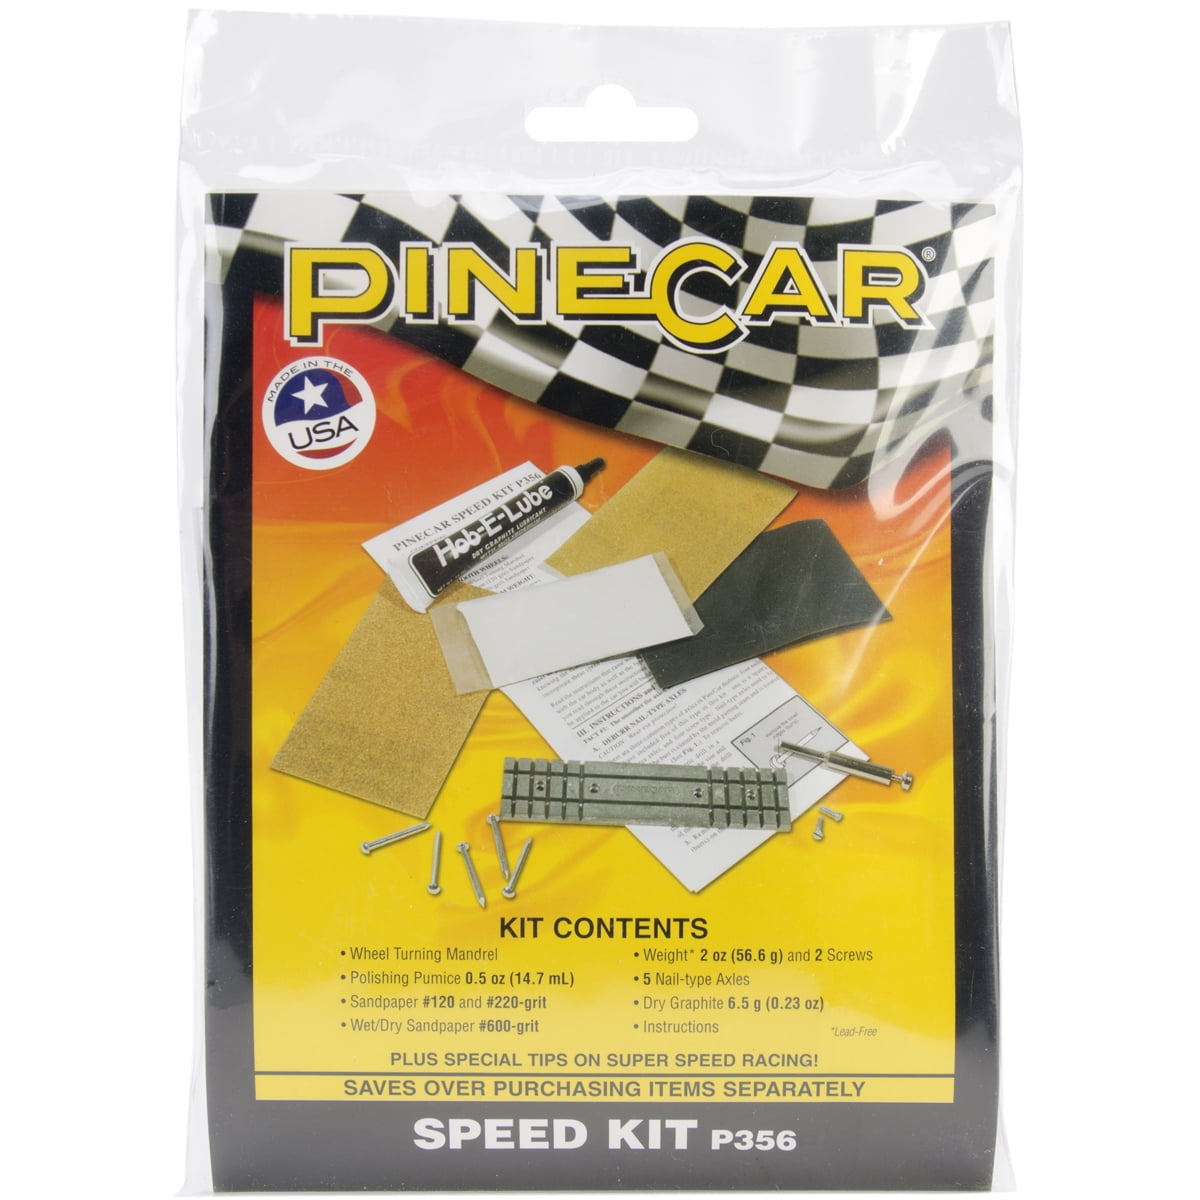 Pine car Speed Kit 